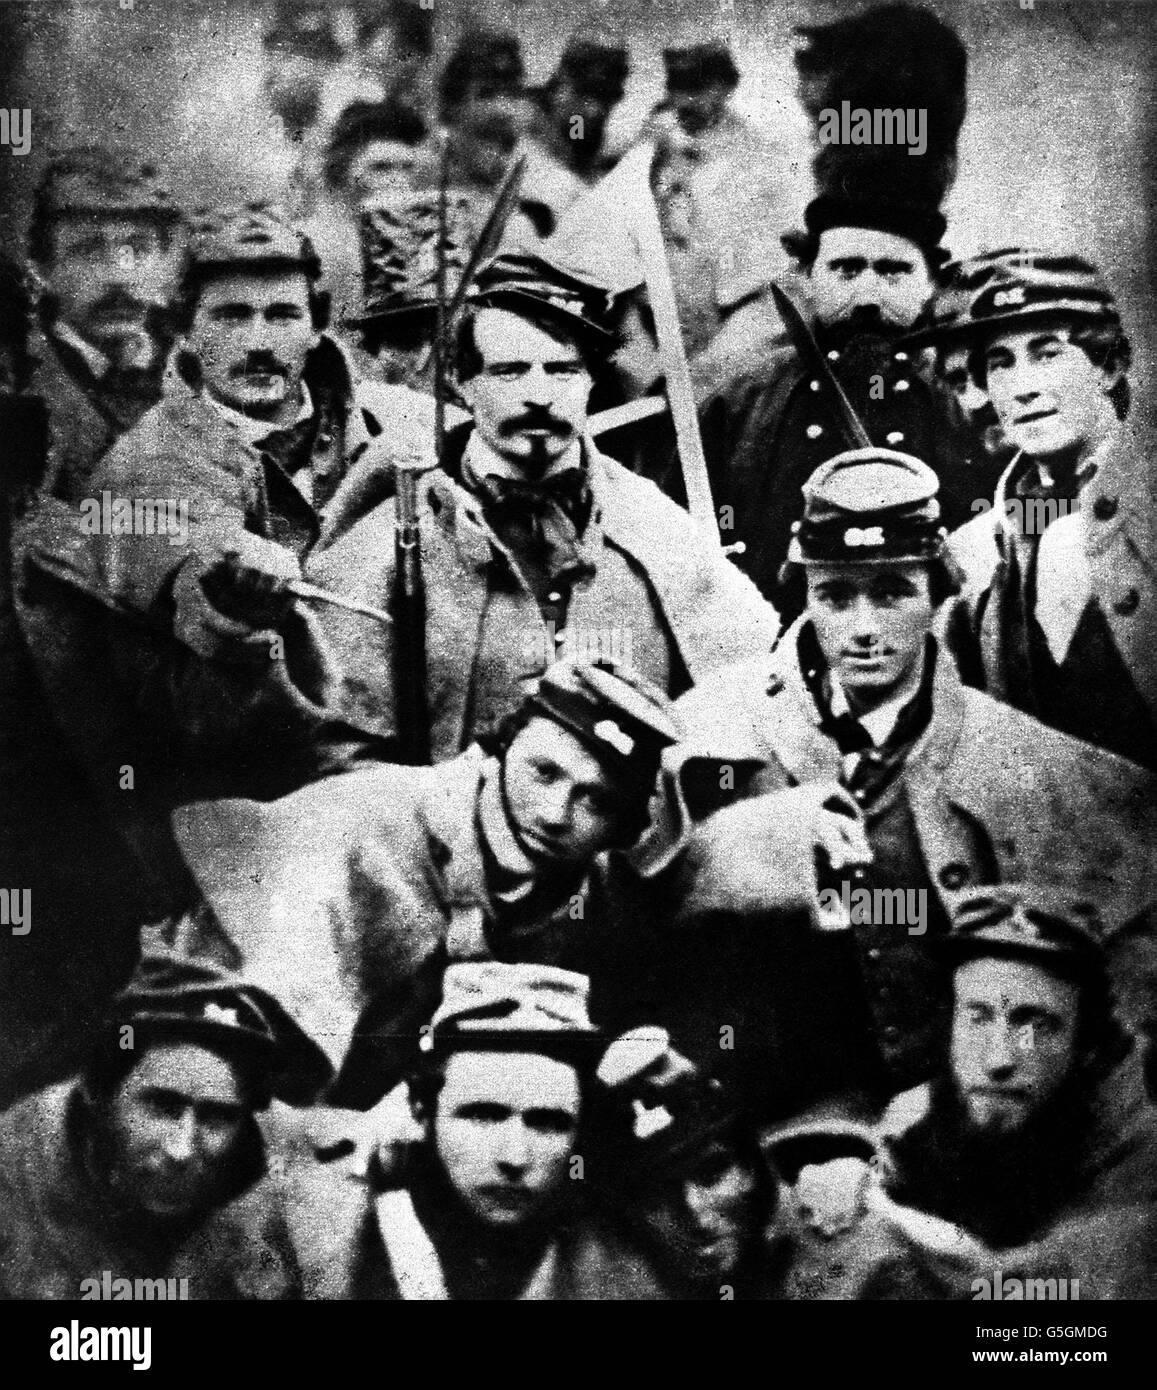 1863 : i soldati confederati posano per la macchina fotografica nei primi giorni della guerra civile americana fra gli stati del sud e il nord unionista. Foto Stock